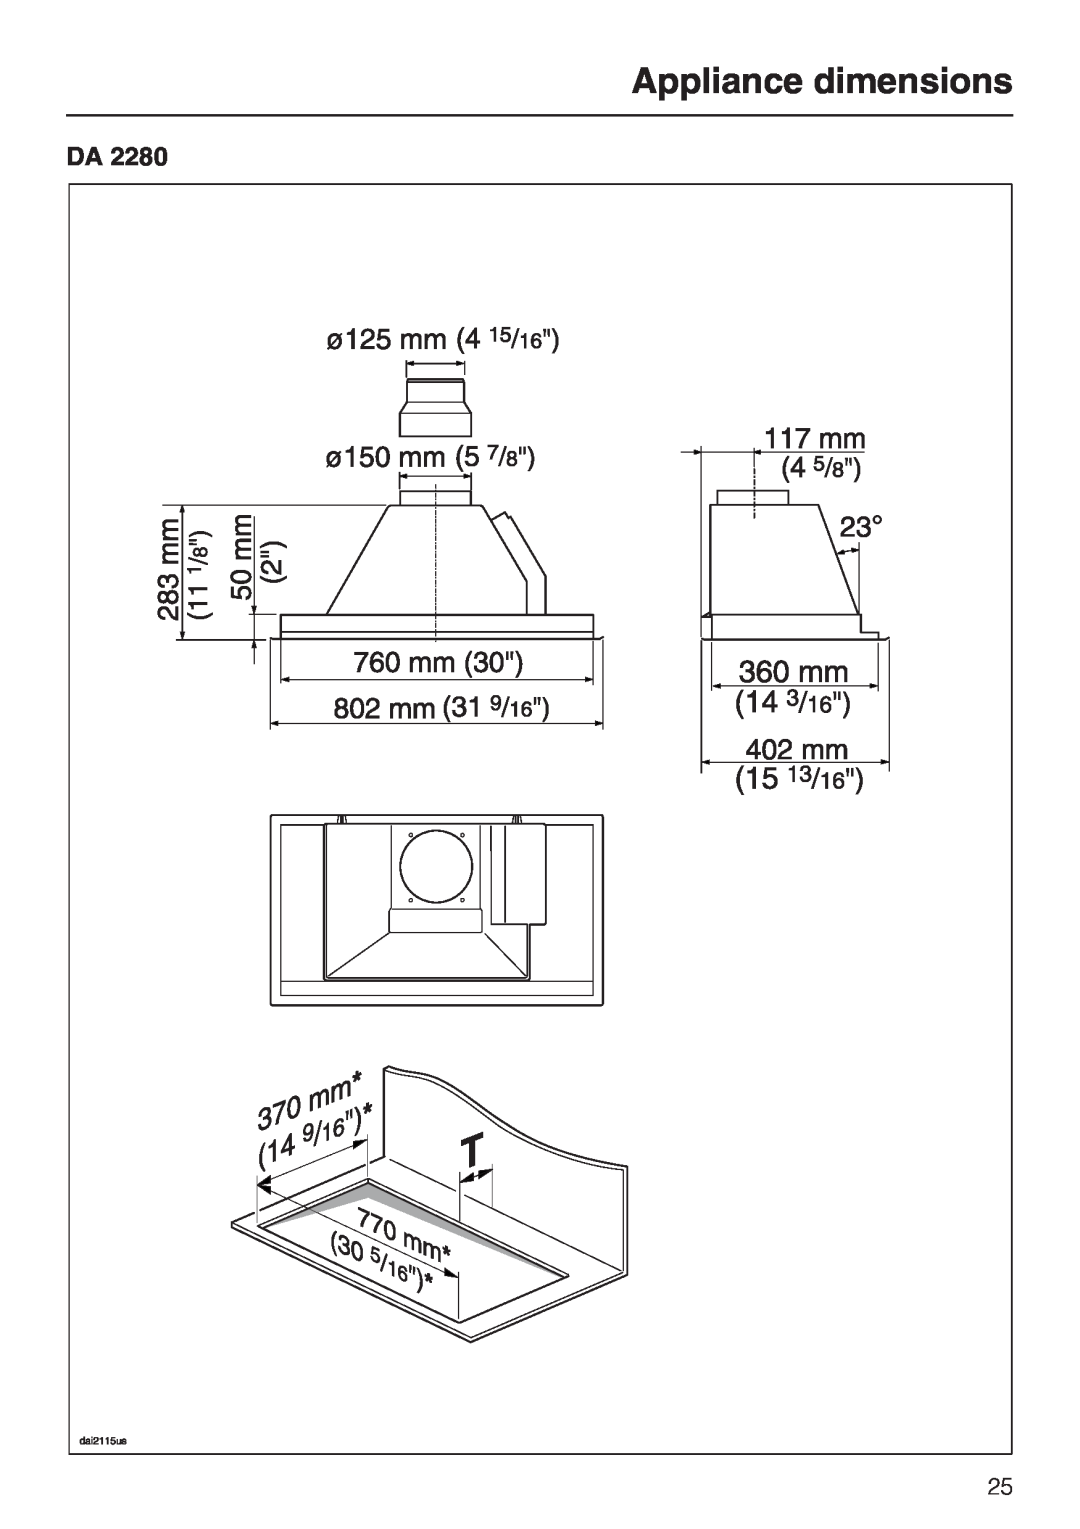 Miele DA2280, DA2210 installation instructions Appliance dimensions 